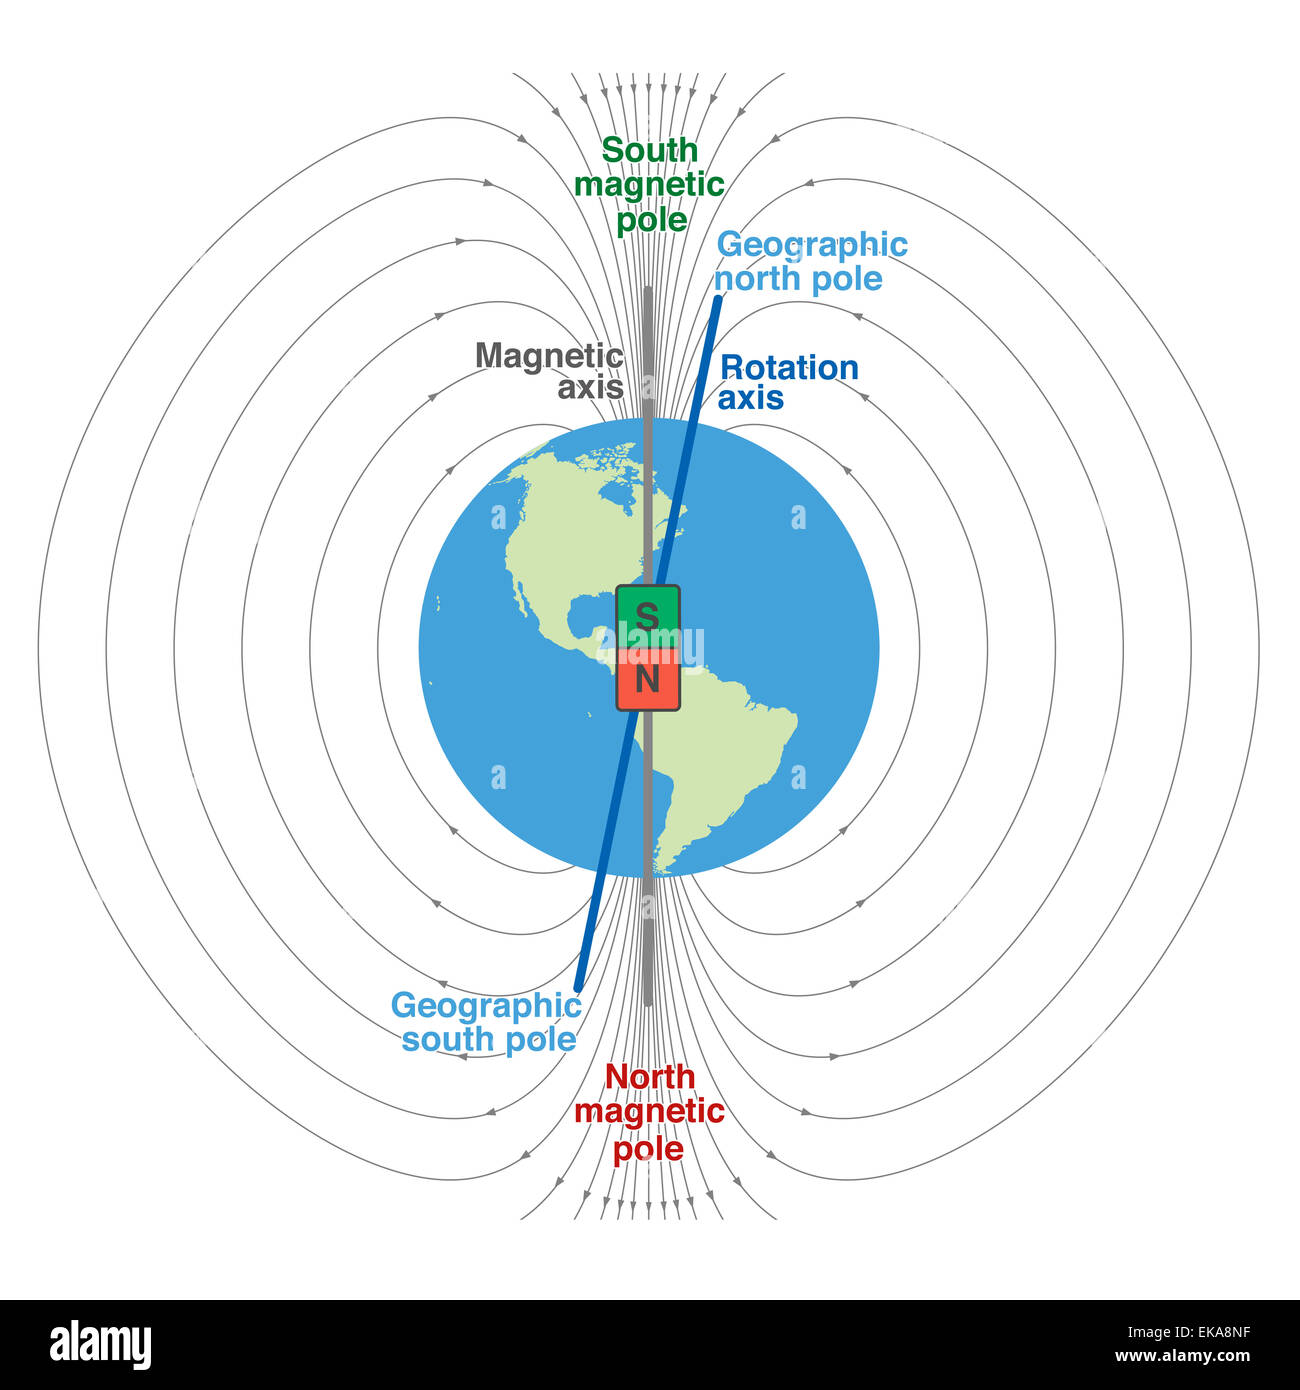 Champ magnétique de la planète terre - représentation scientifique et géographique avec le nord magnétique et le pôle sud, l'axe magnétique et ro Banque D'Images